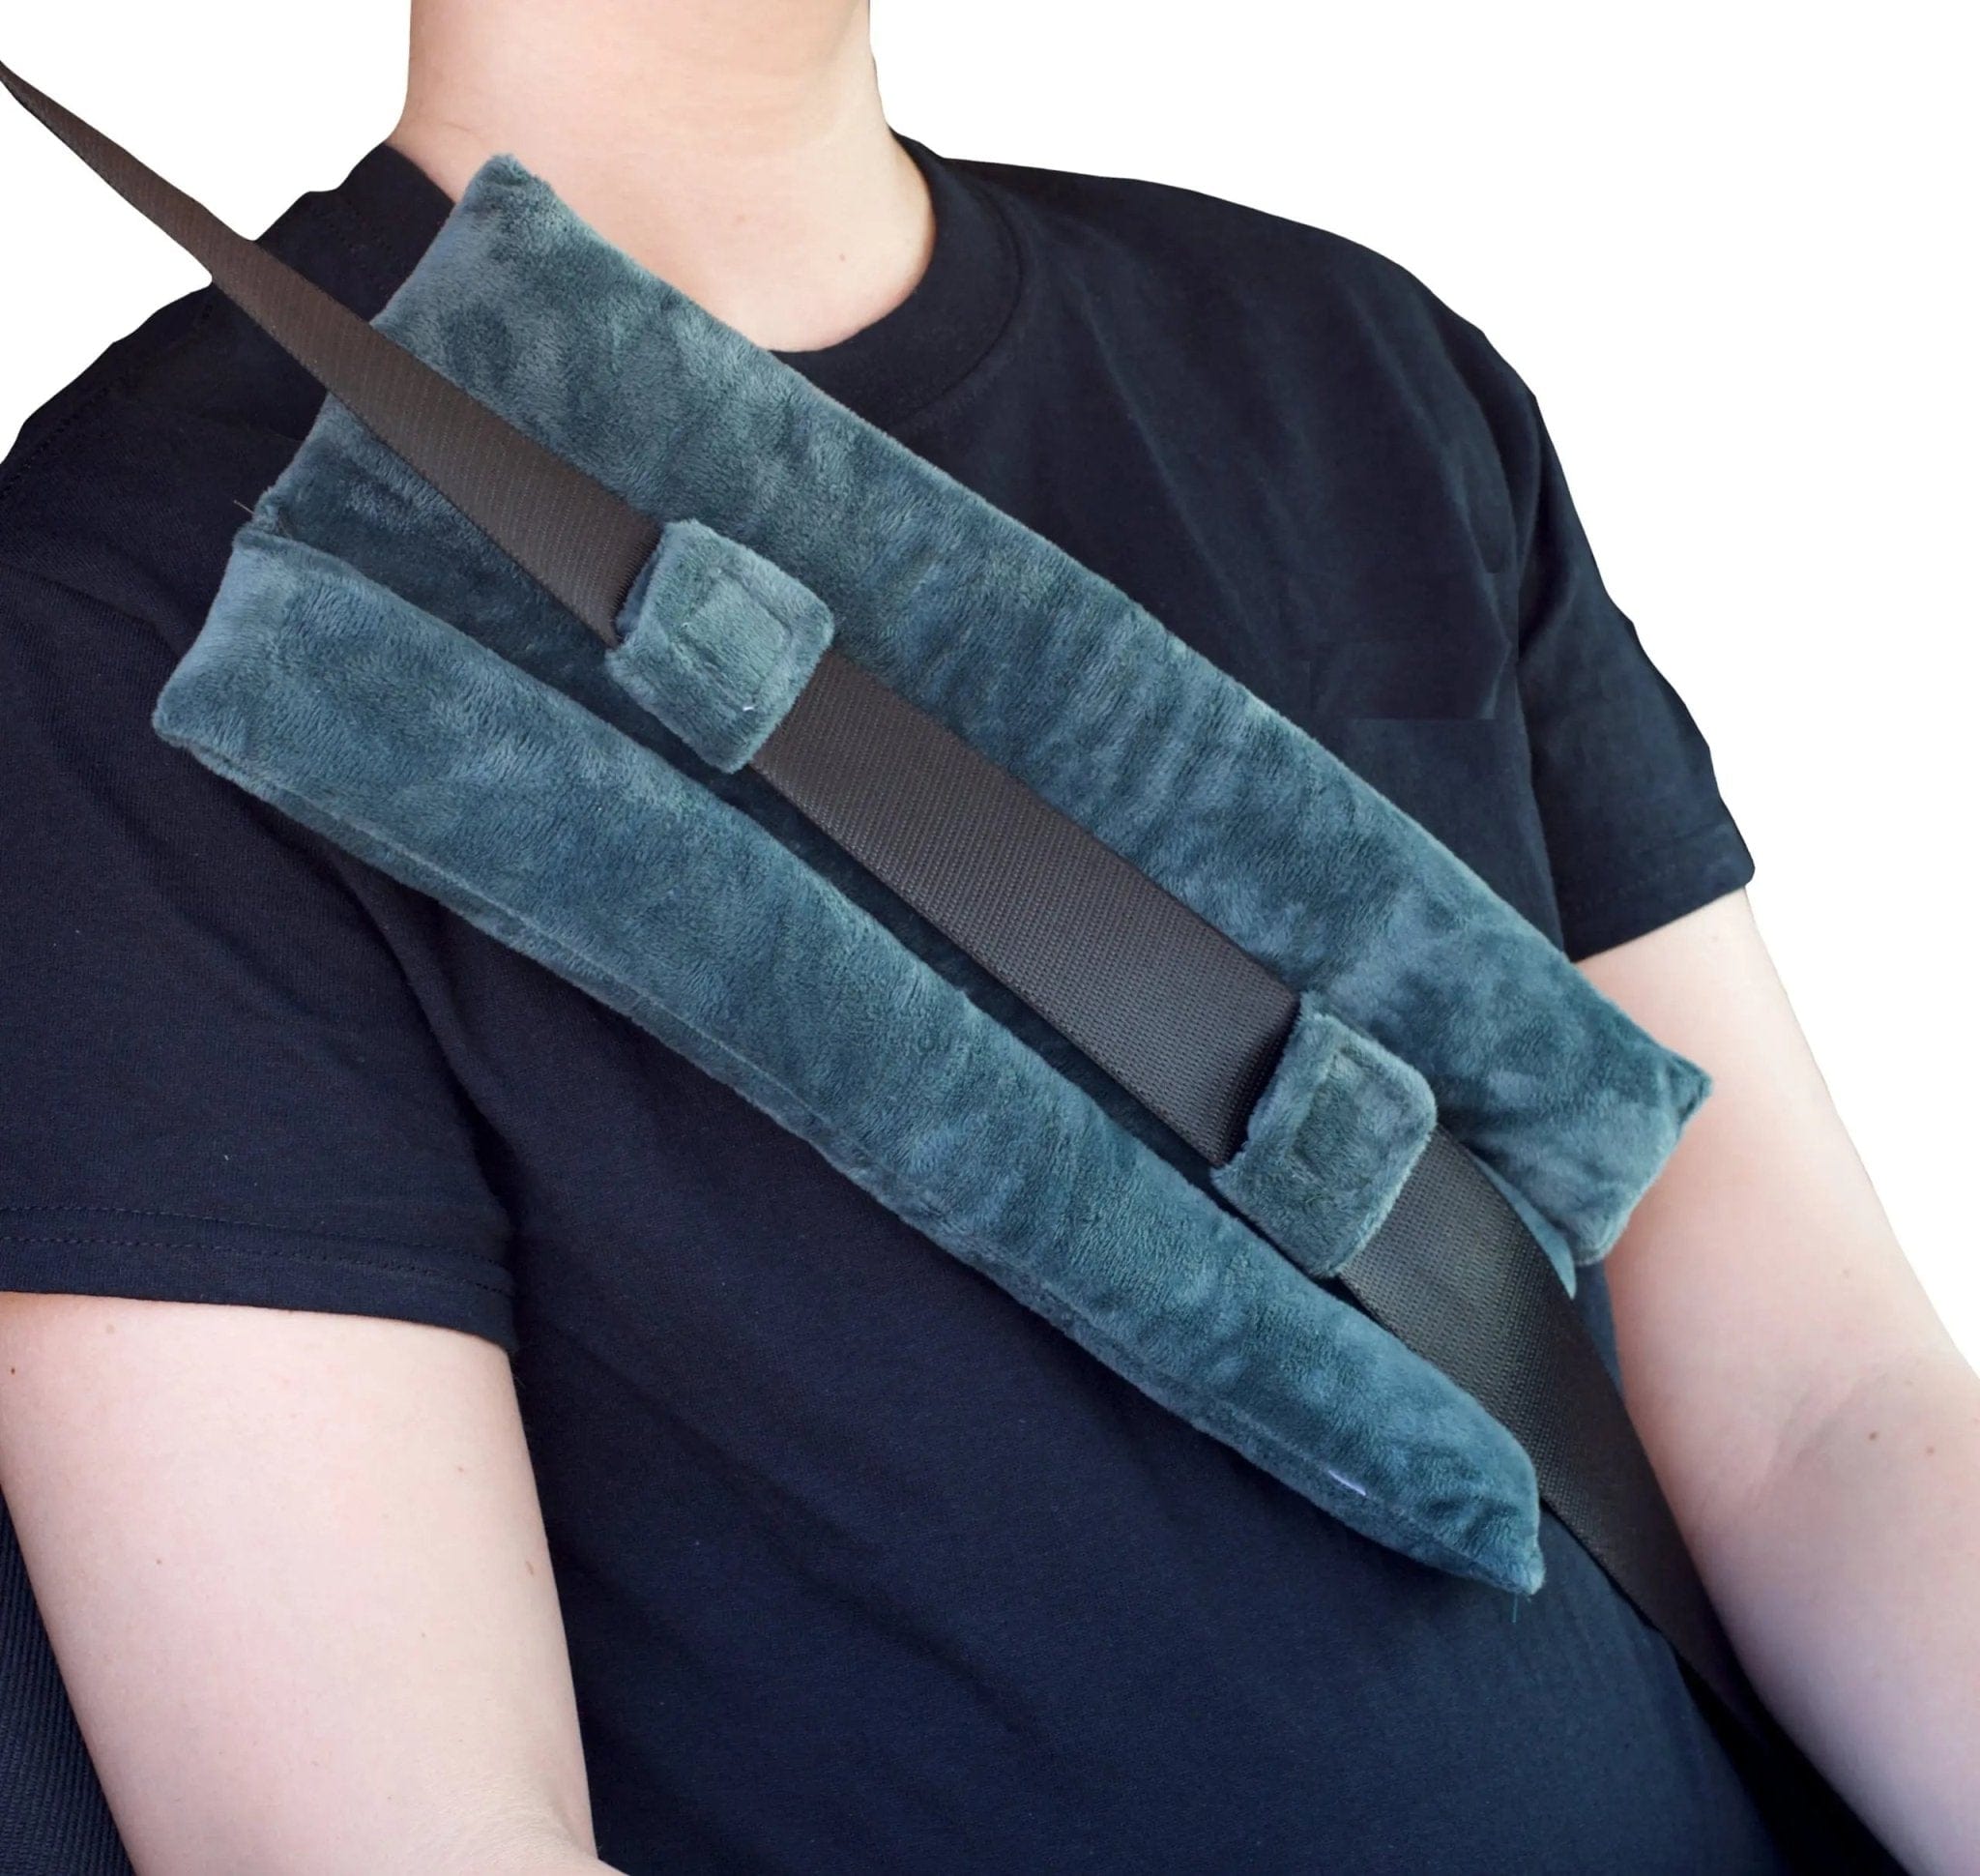 Post Surgery Seatbelt Pillow